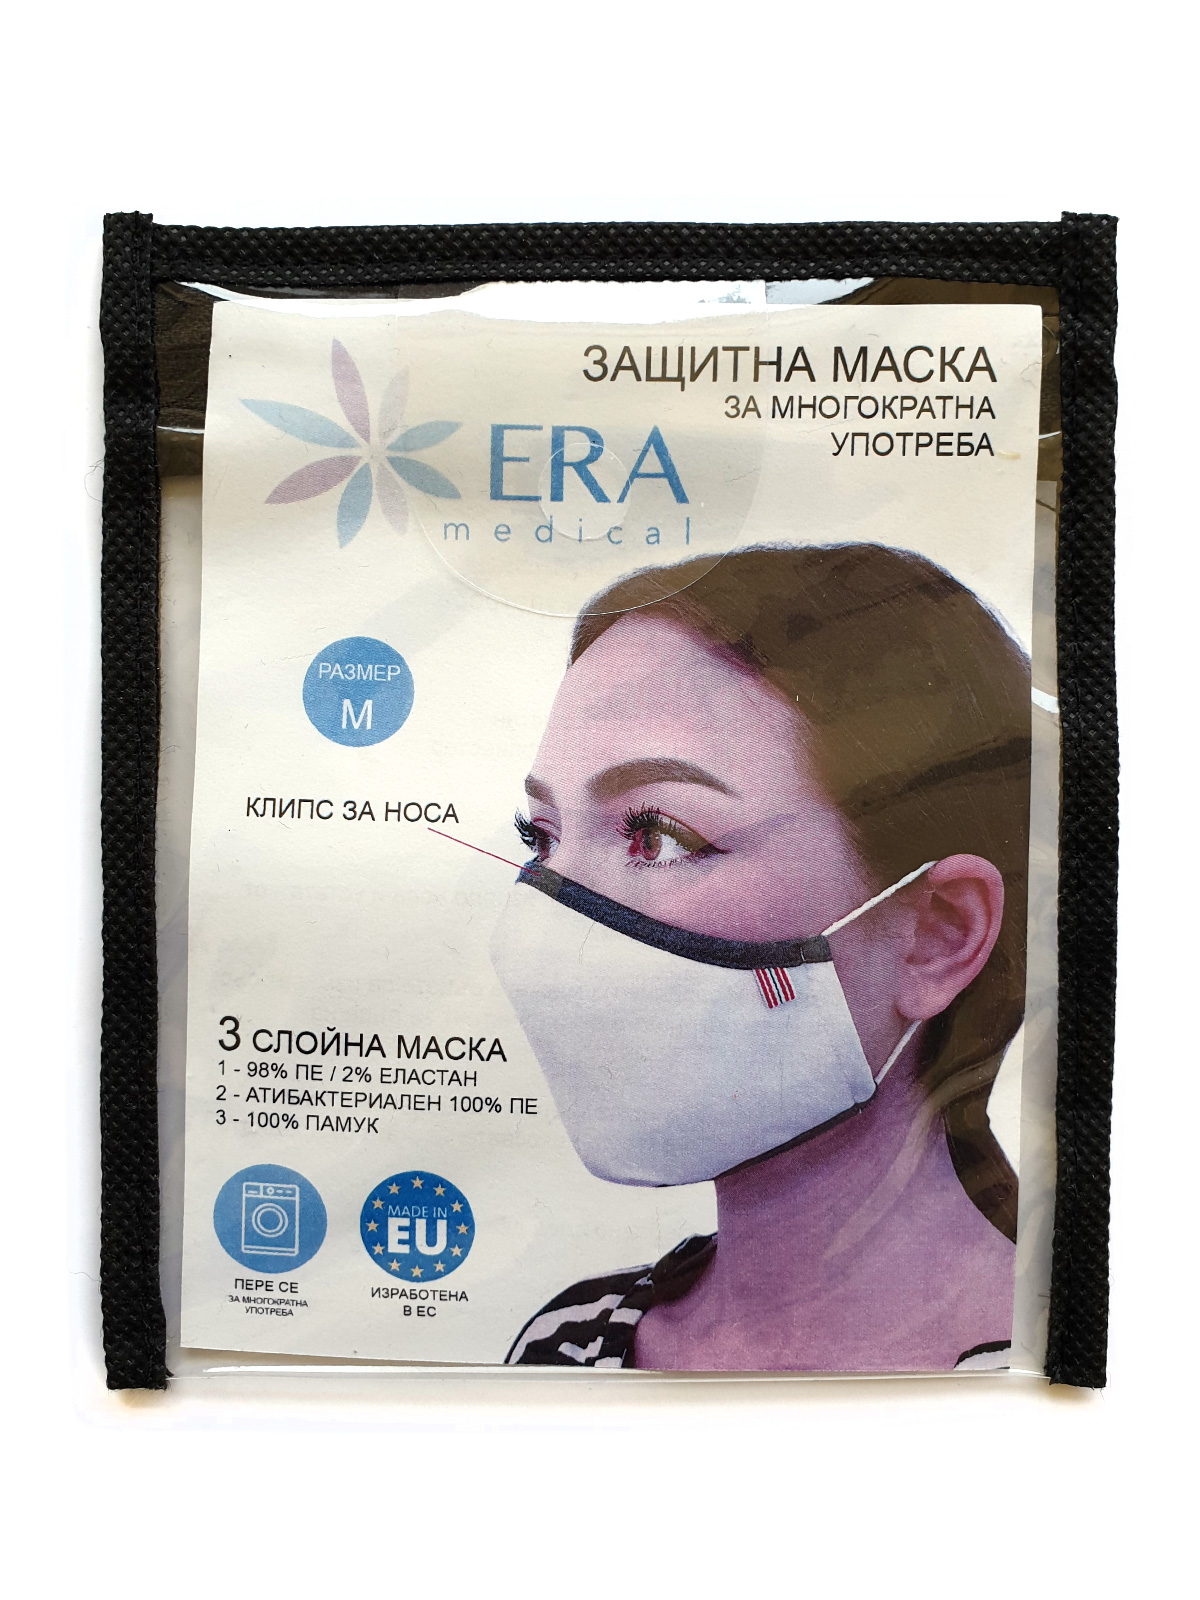  επαναχρησιμοποιήσιμη μάσκα λευκή  - 10681 - € 2.76 img4